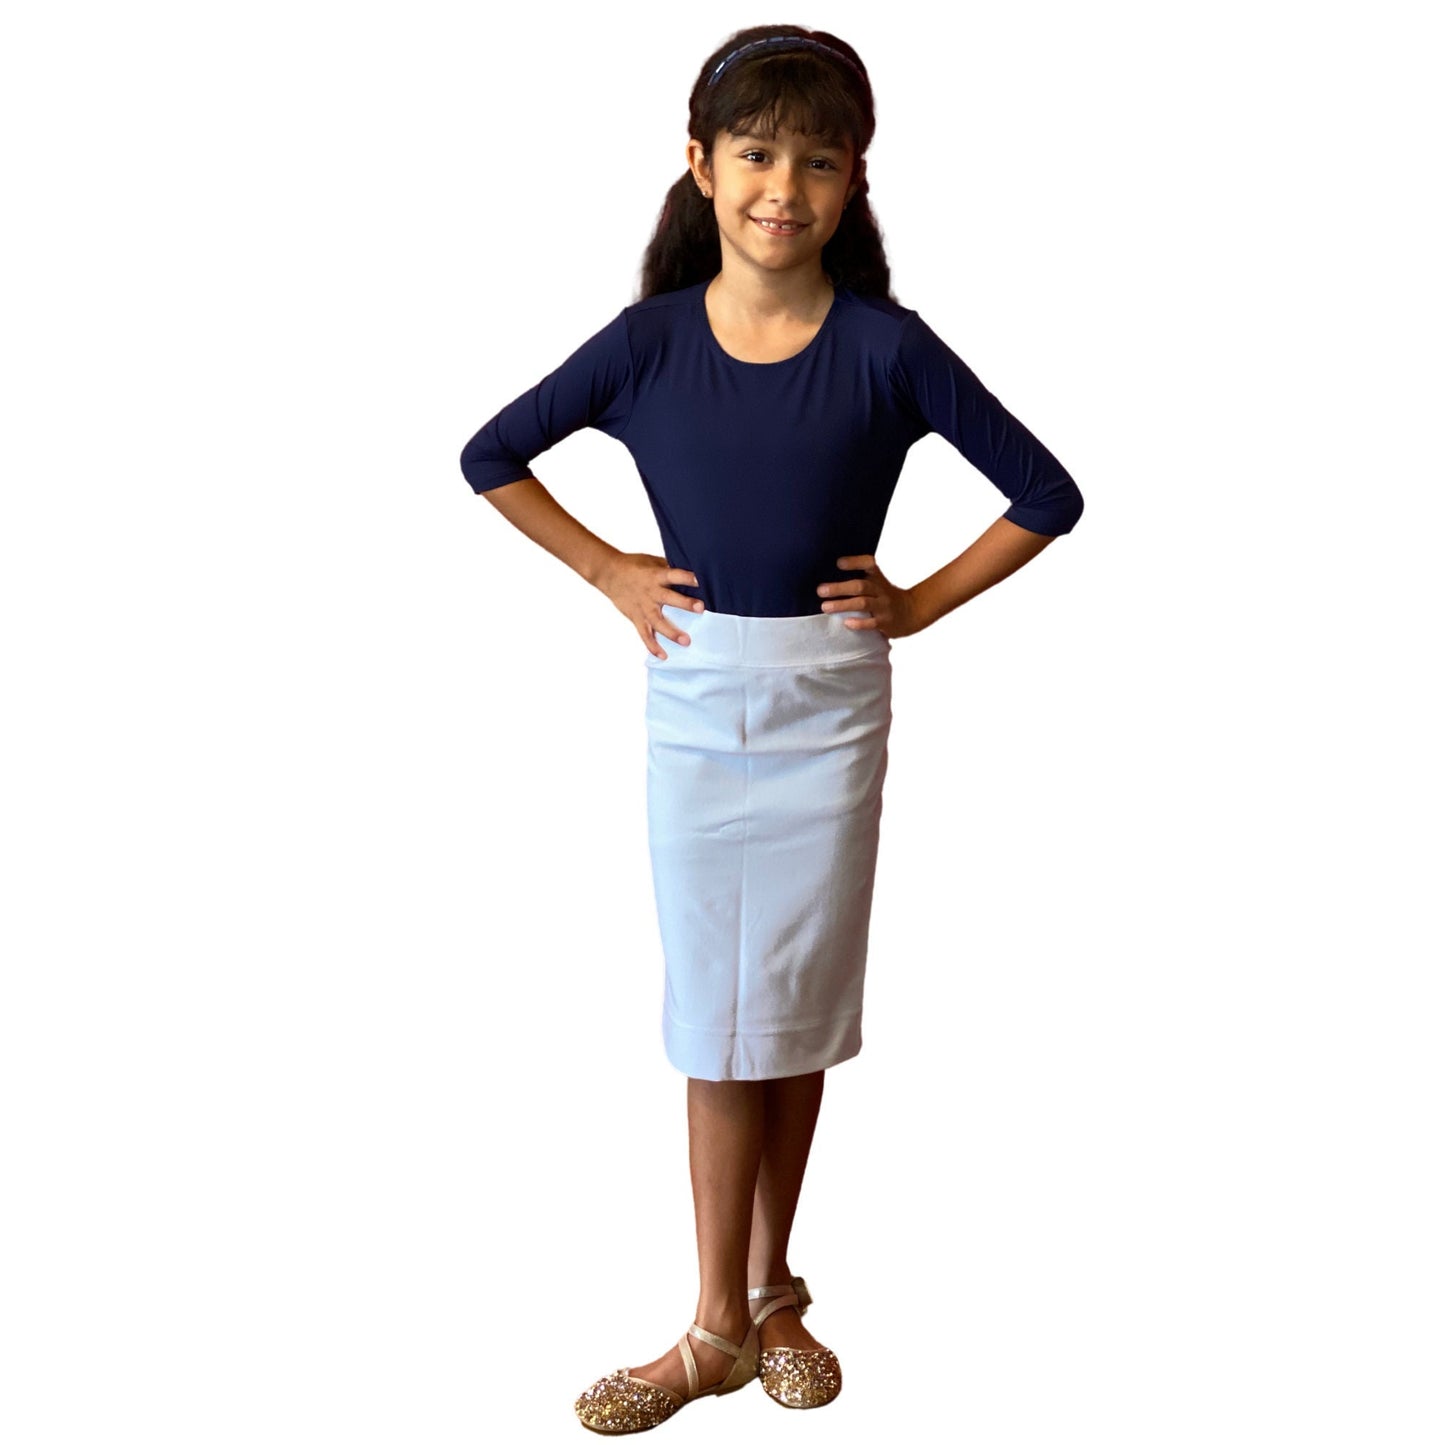 Junior Midi Skirt / Modest Skirt / Knee Length Skirt / White Skirt for School Uniform/ School Approved Skirt / Sz 6-16 / tzniut girl